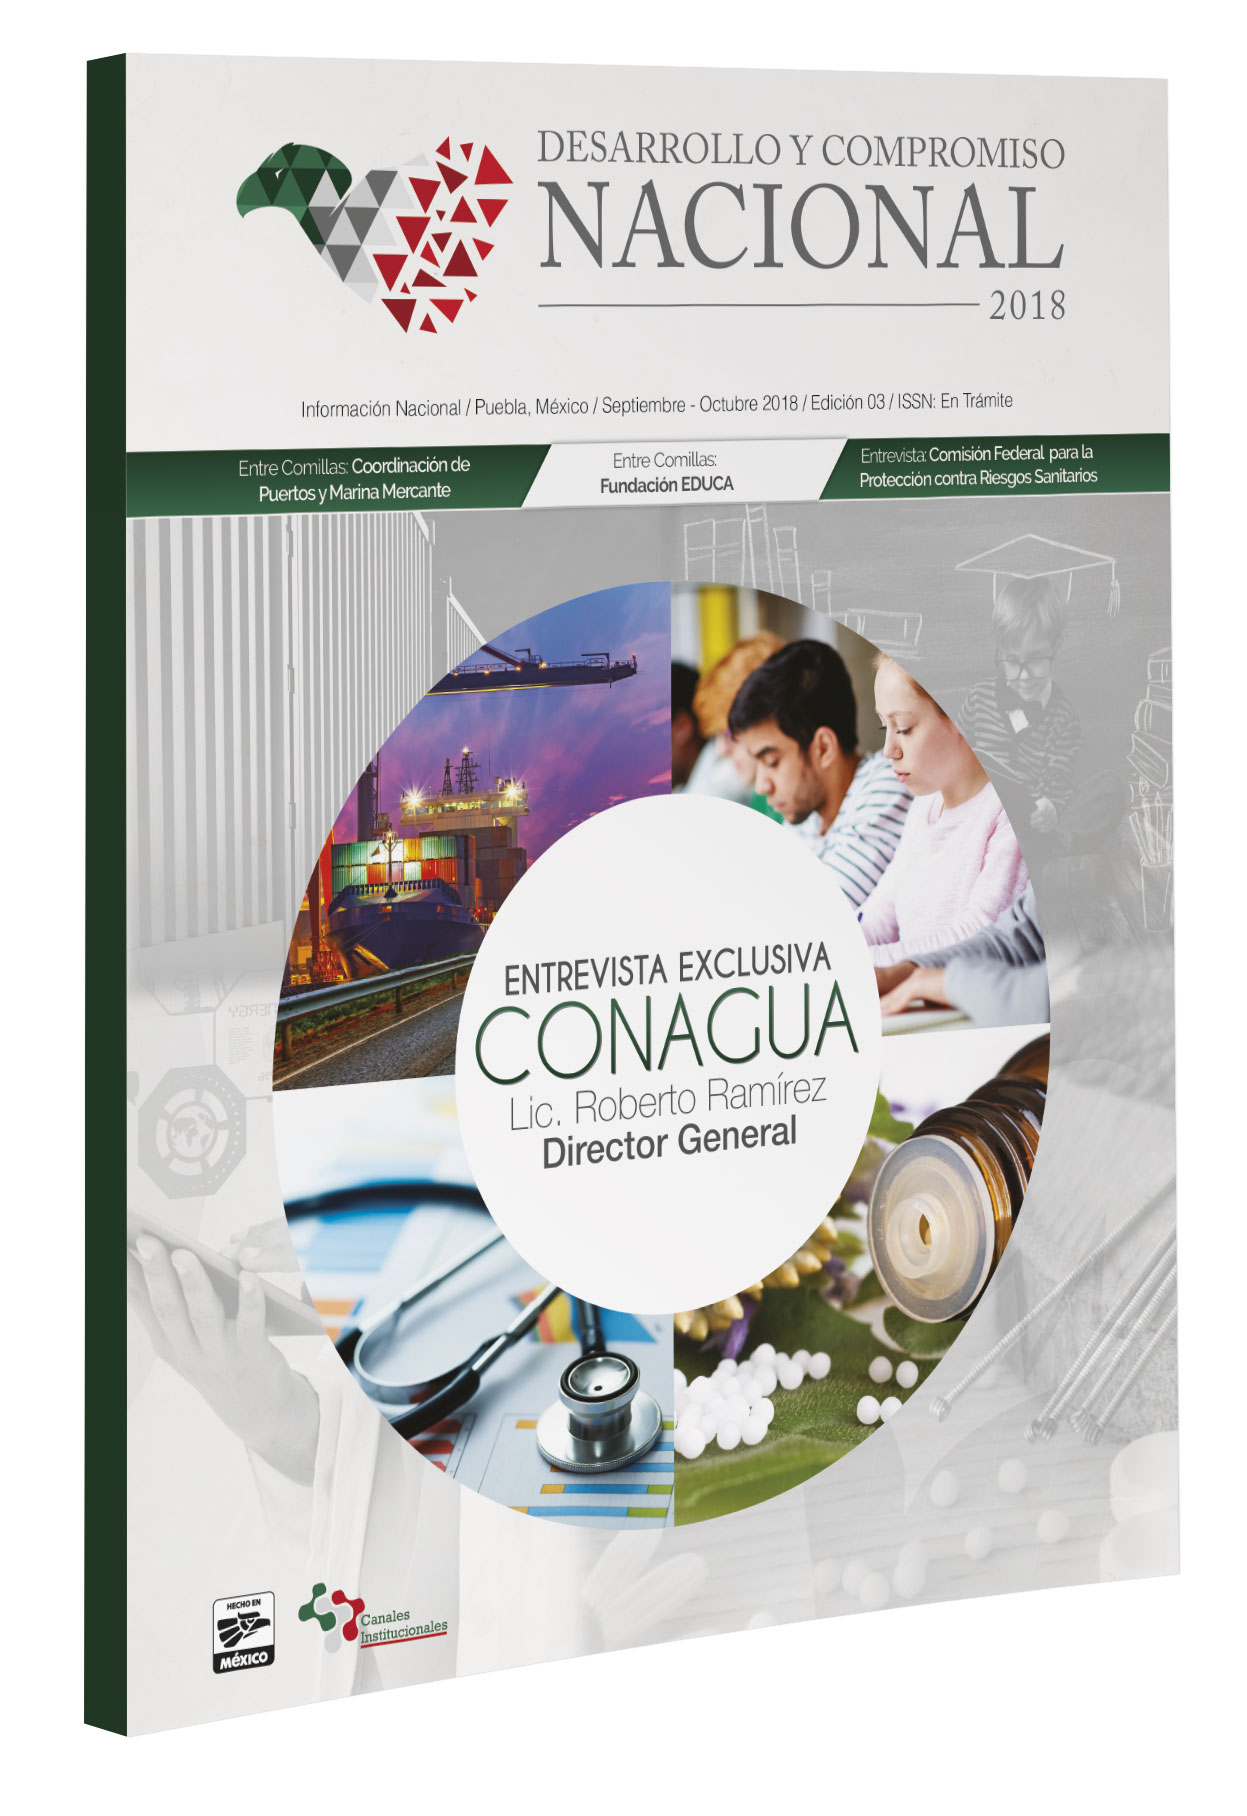 Desarrollo y Compromiso Nacional Mexico 2018 Edición 3